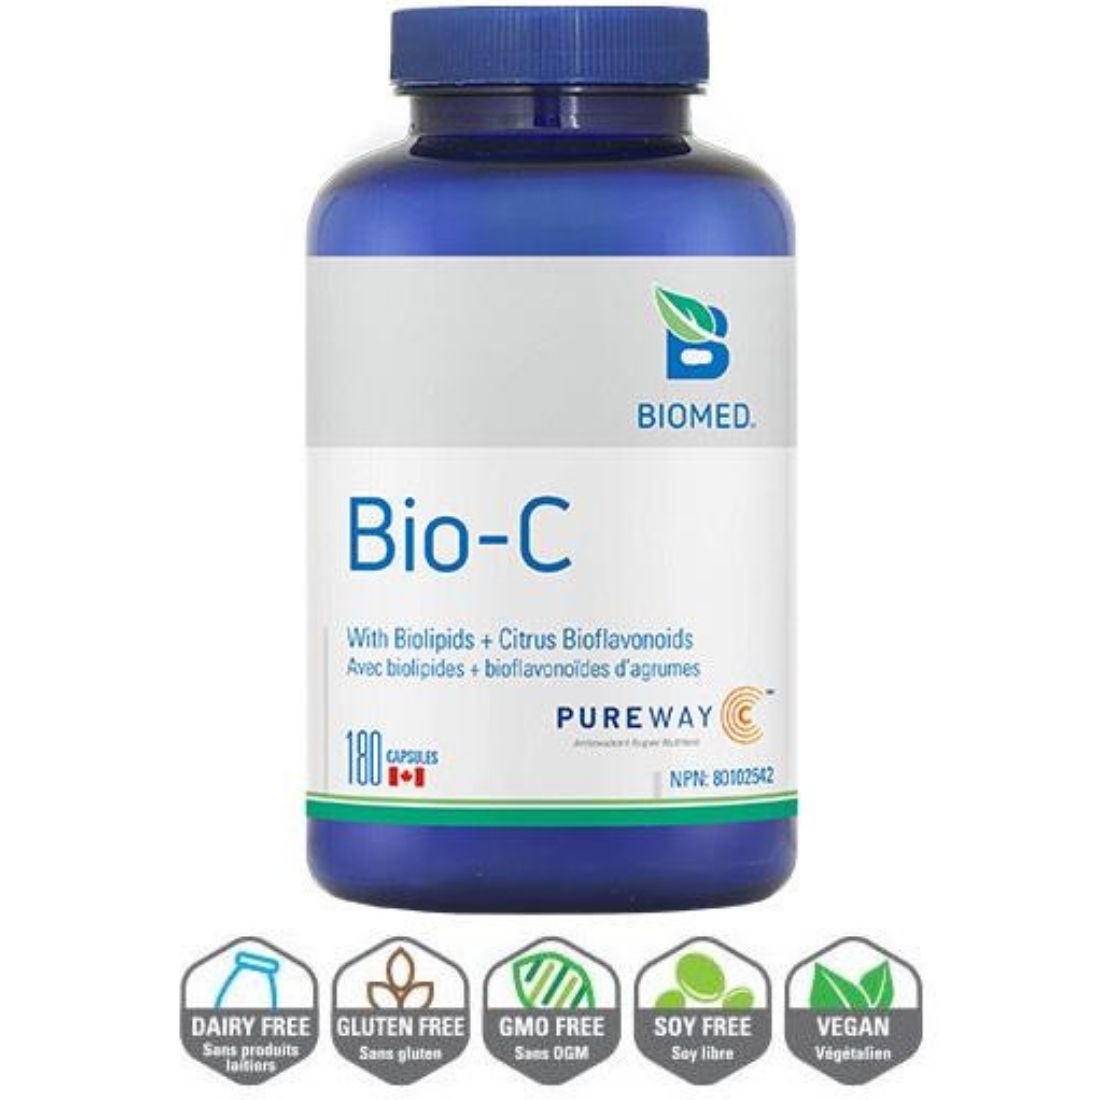 Biomed Bio-C (Lipid metabolites and Citrus Bioflavonoids) Capsules